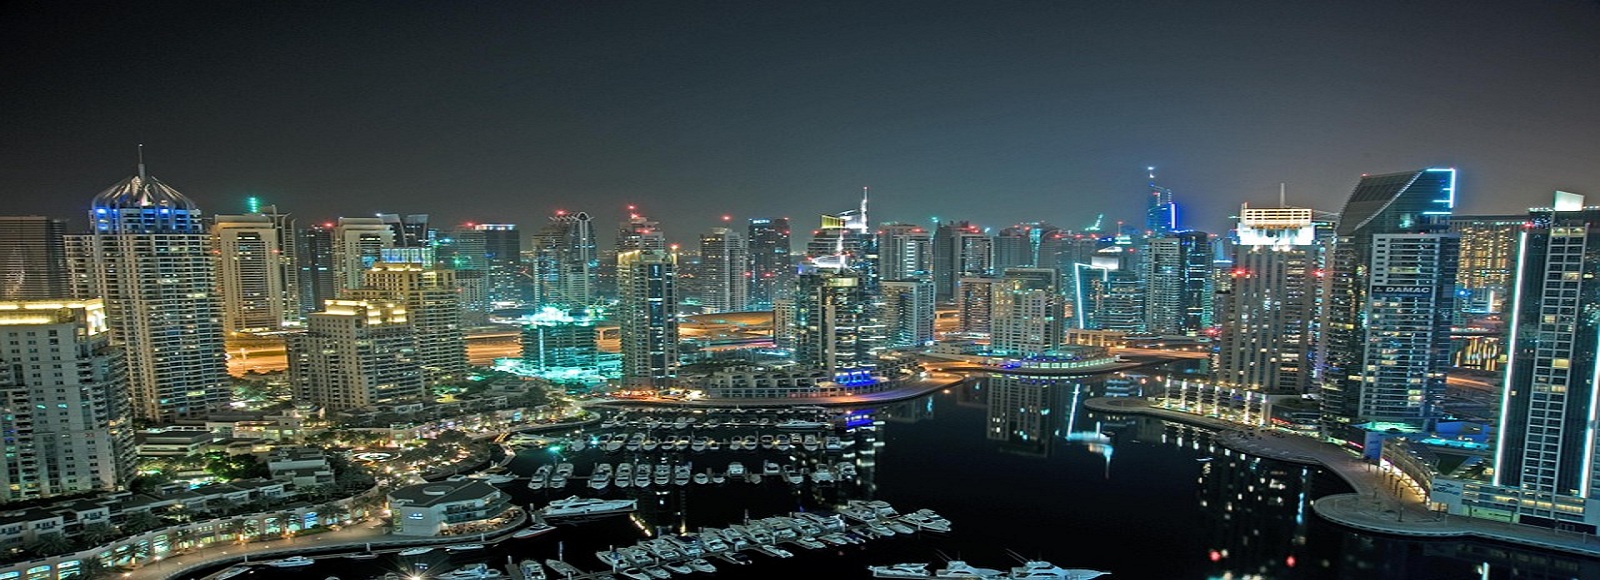 Ofertas de Traslados en Emirates Árabes Unidos. Traslados económicos en Emirates Árabes Unidos 